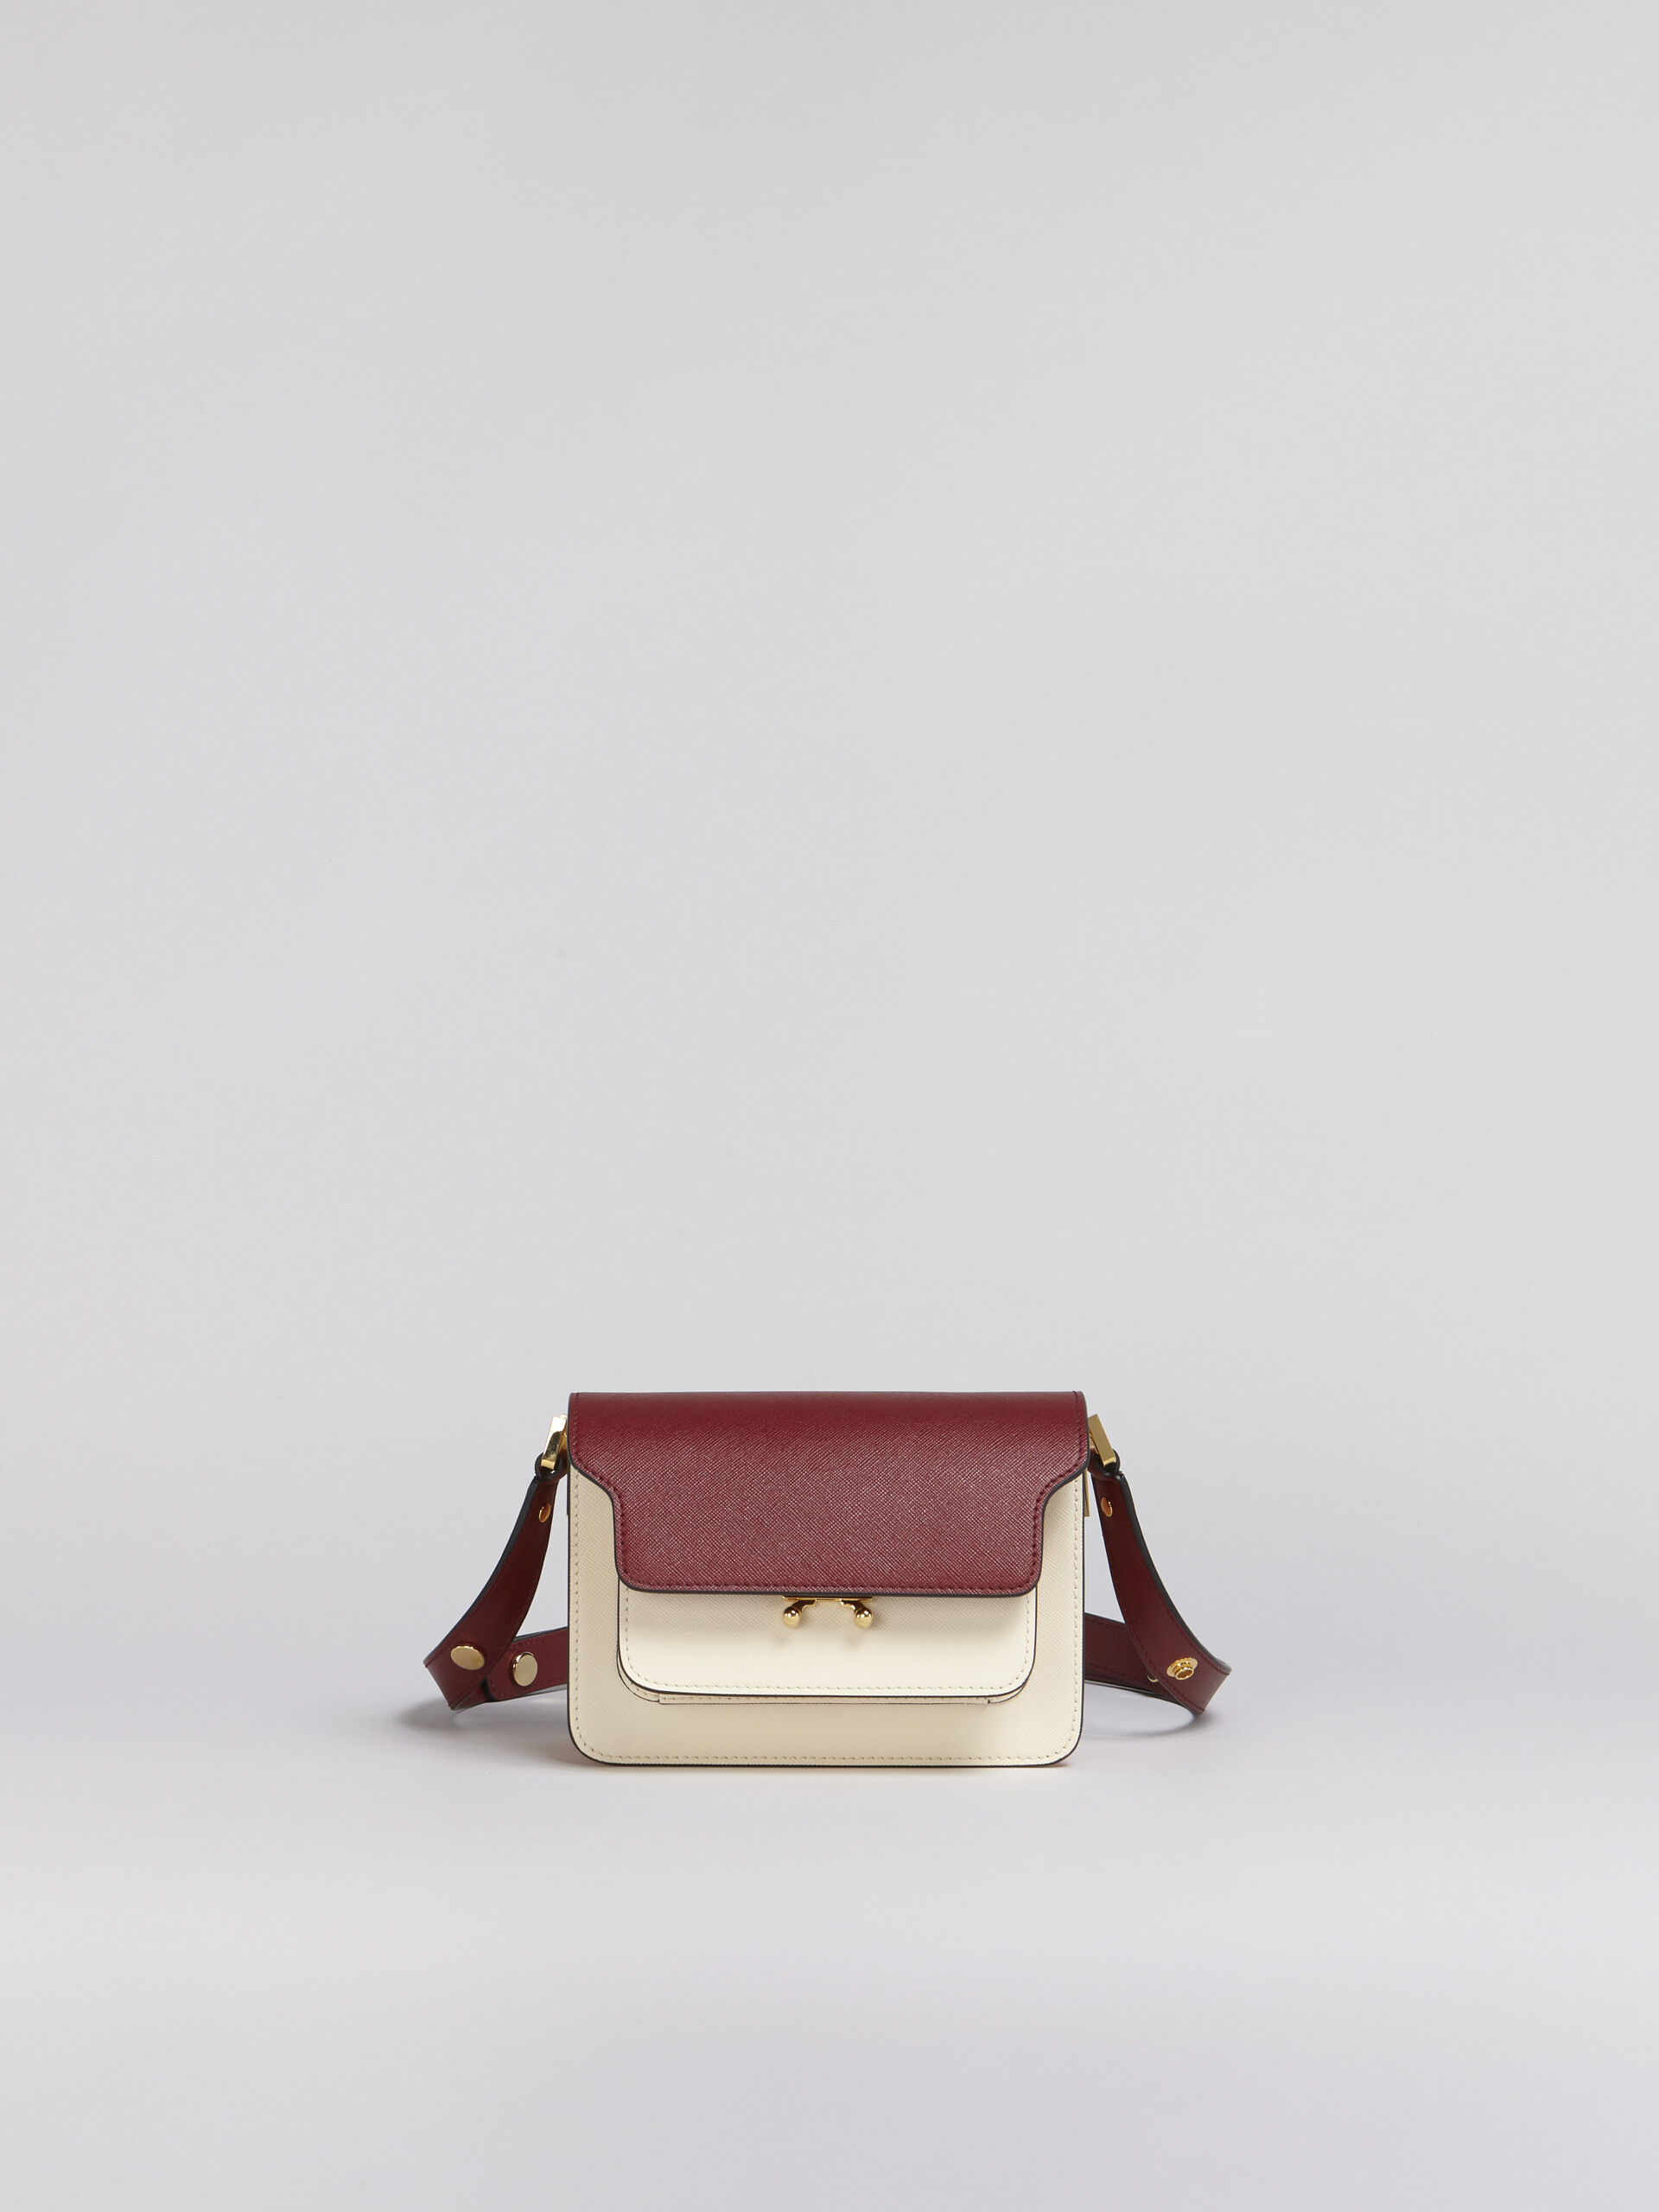 Mini-sac porté épaule TRUNK de taille moyenne en cuir saffiano rouge multicolore - Sacs portés épaule - Image 1